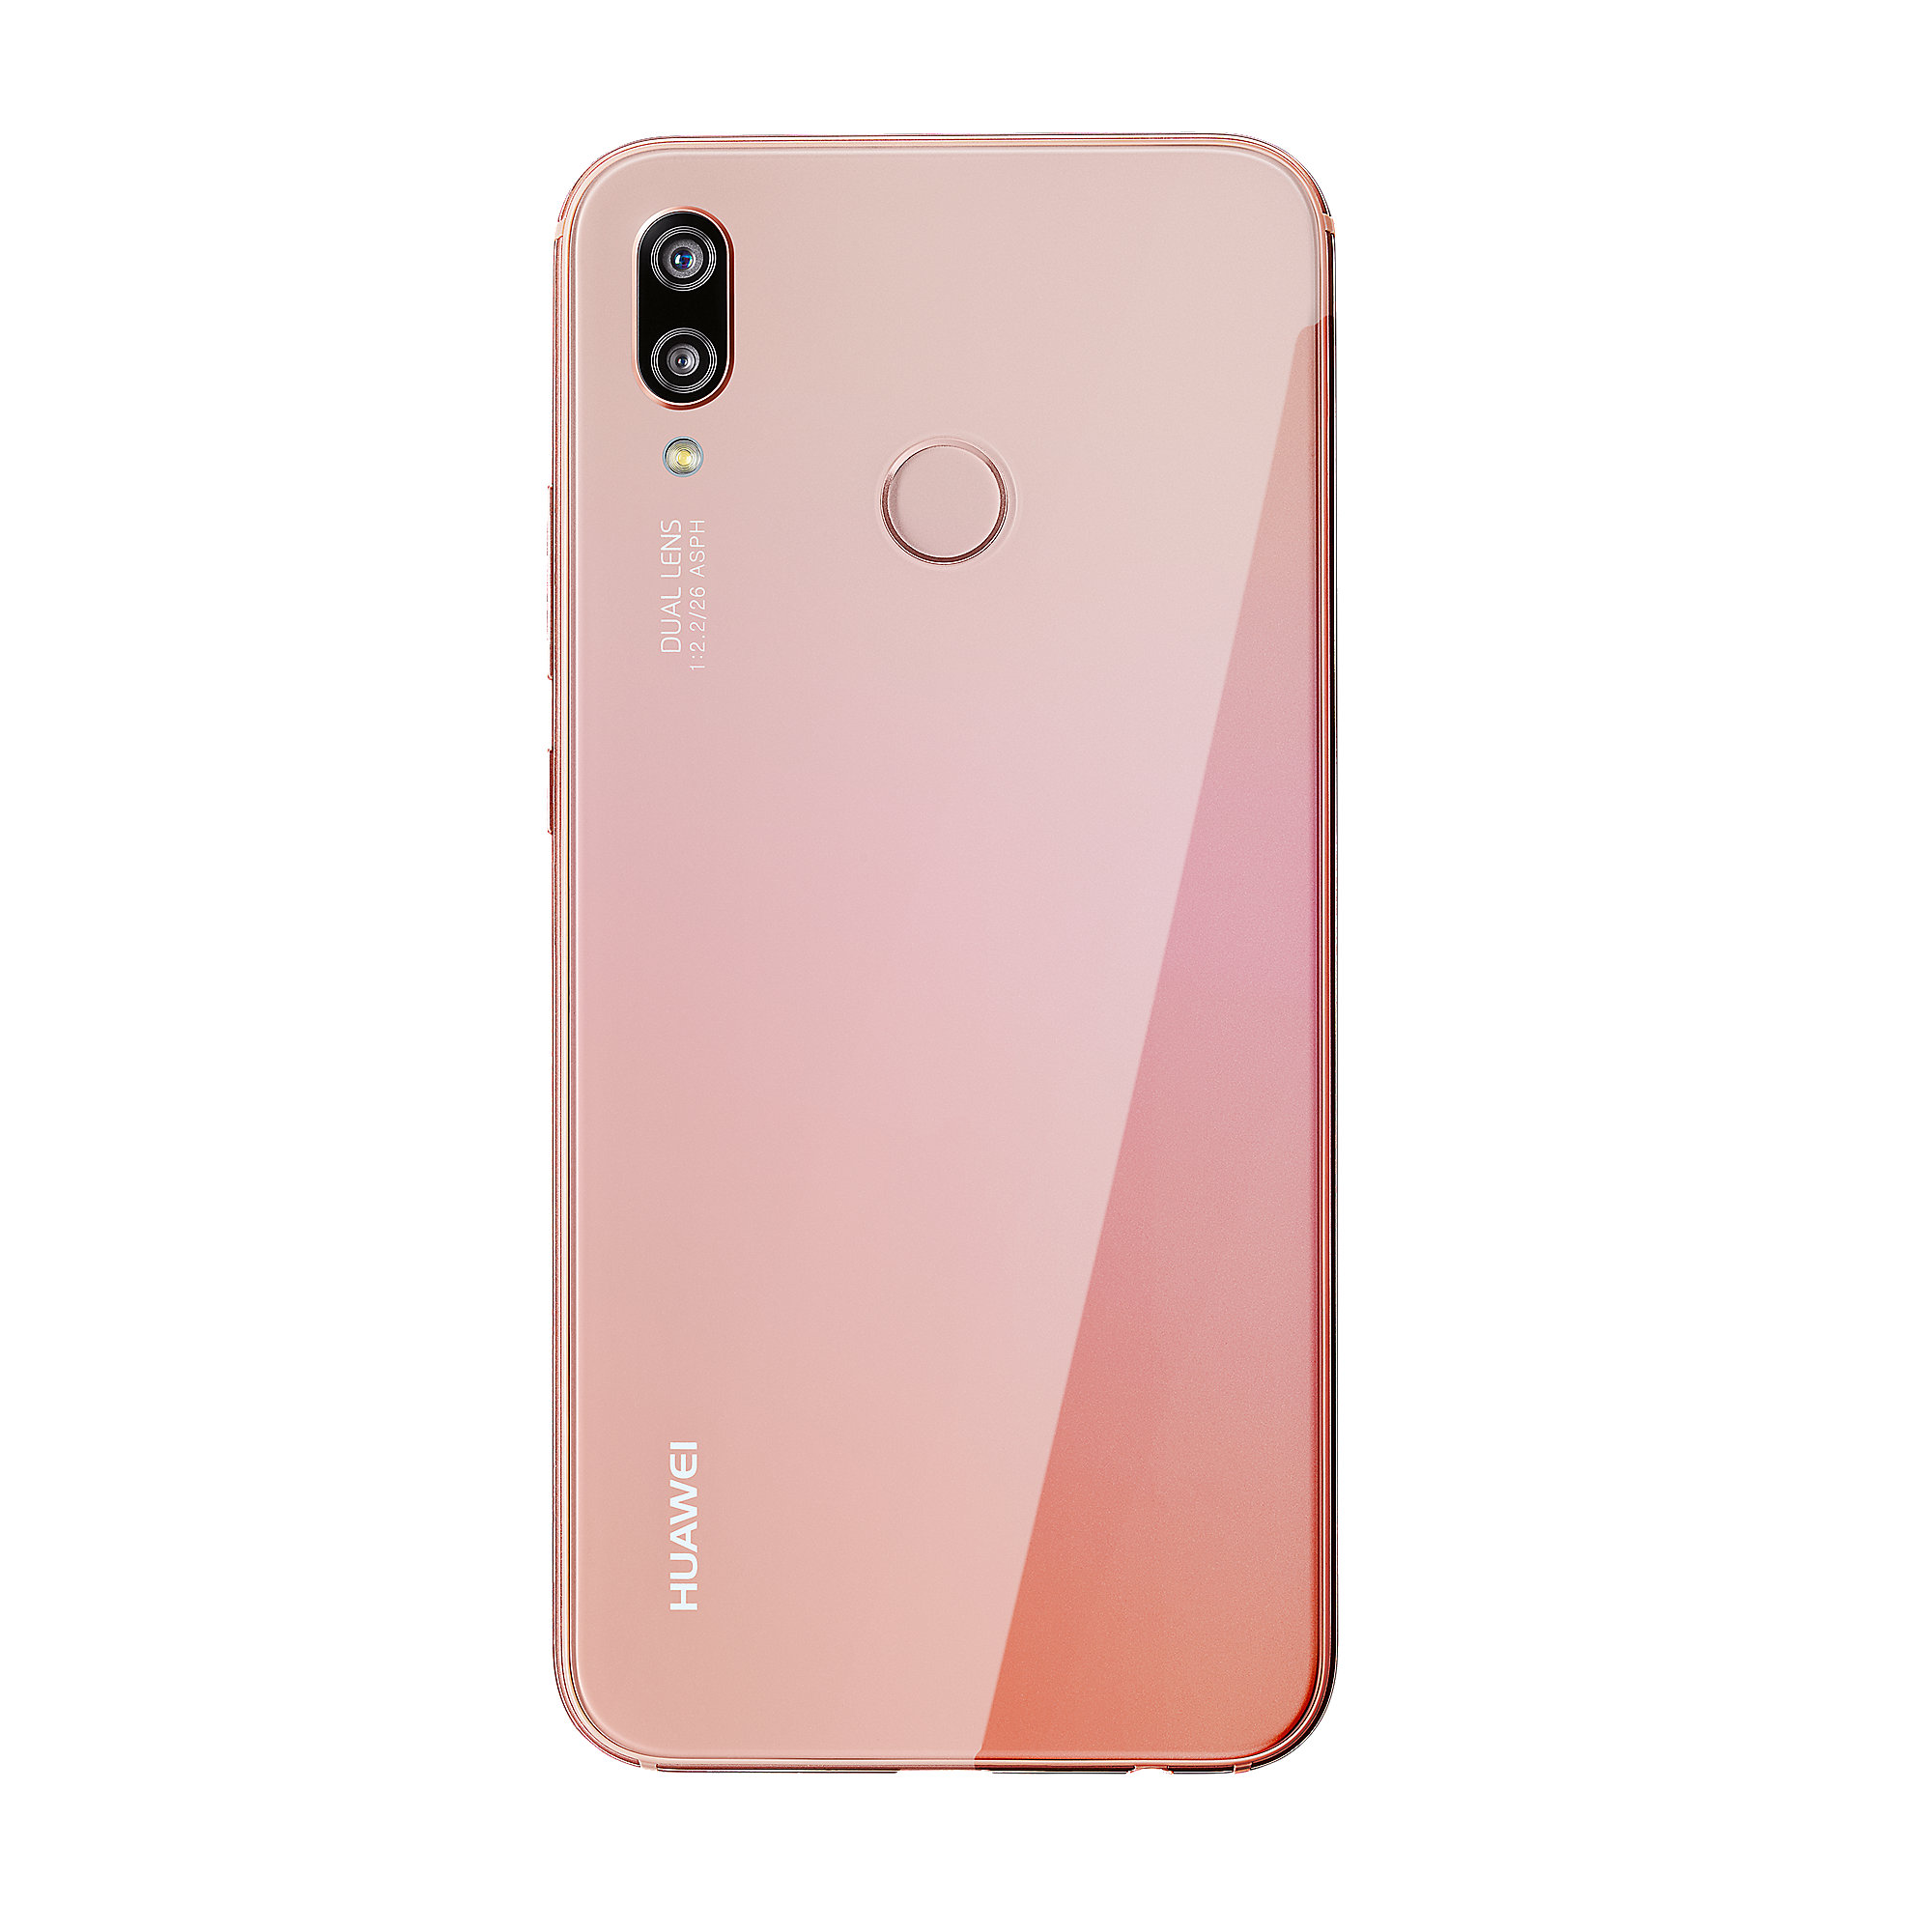 Huawei p20 lite pink ohne vertrag